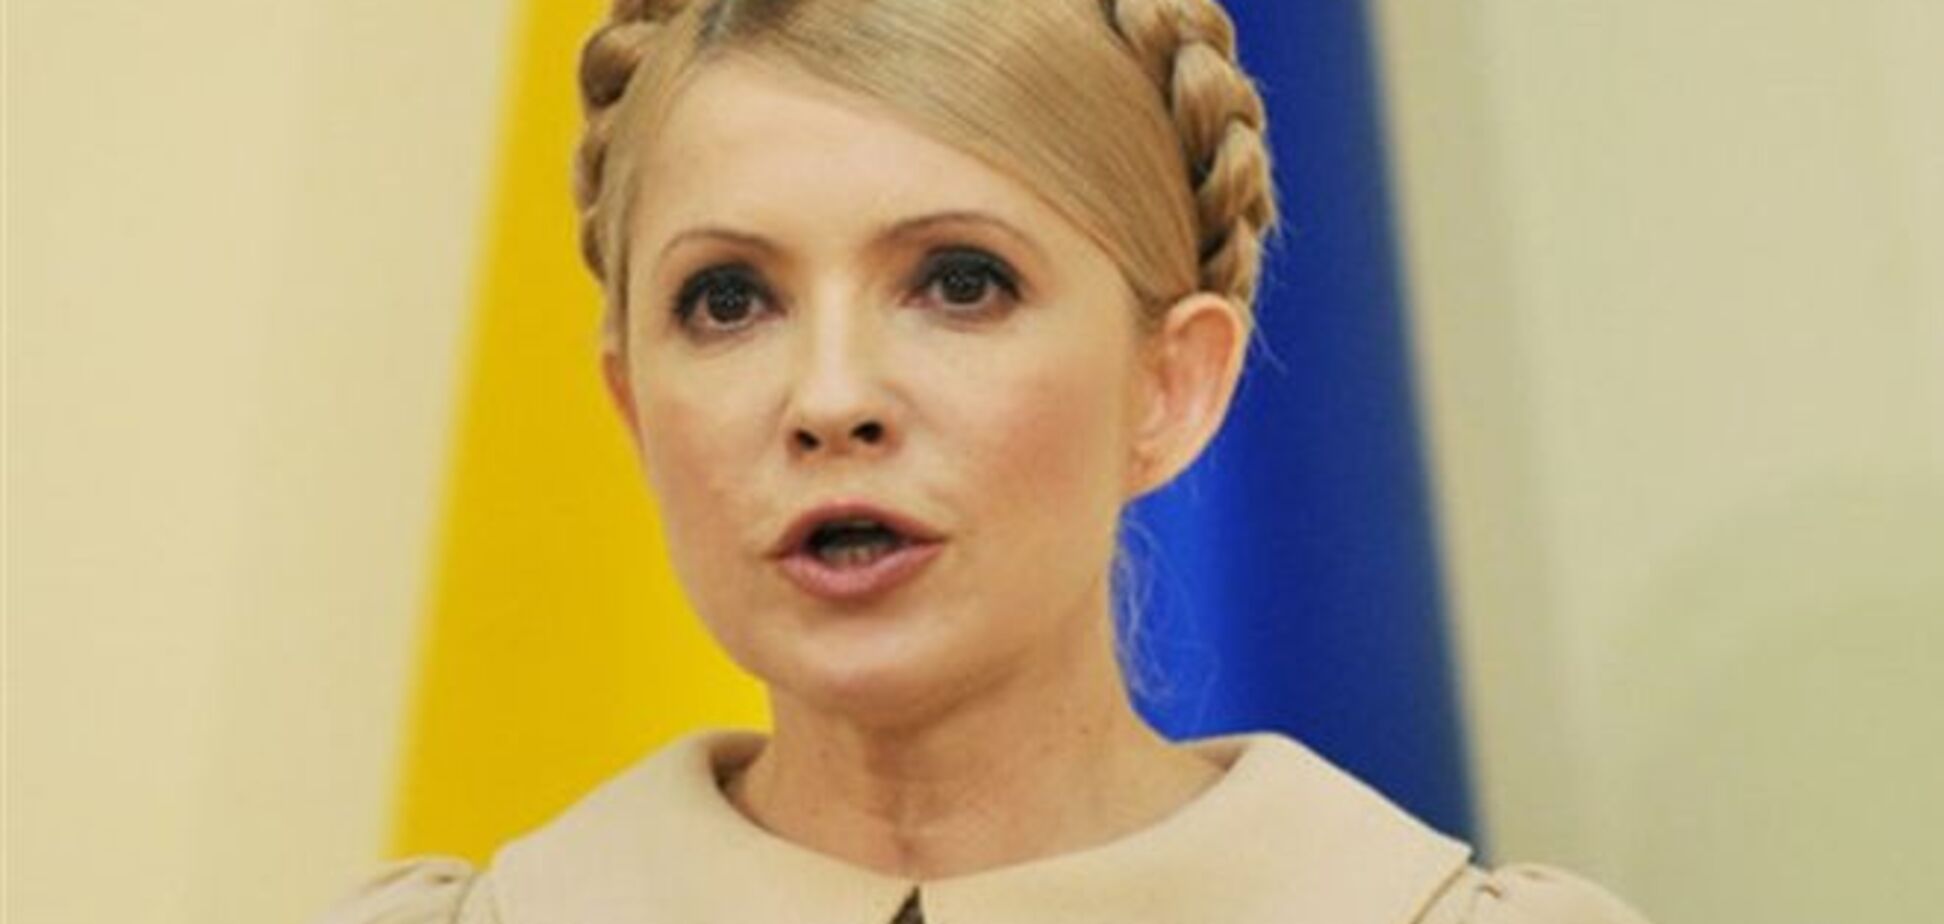 Заявление Тимошенко о торговых войнах с Россией похоже на прокол ее пиарщиков - эксперт